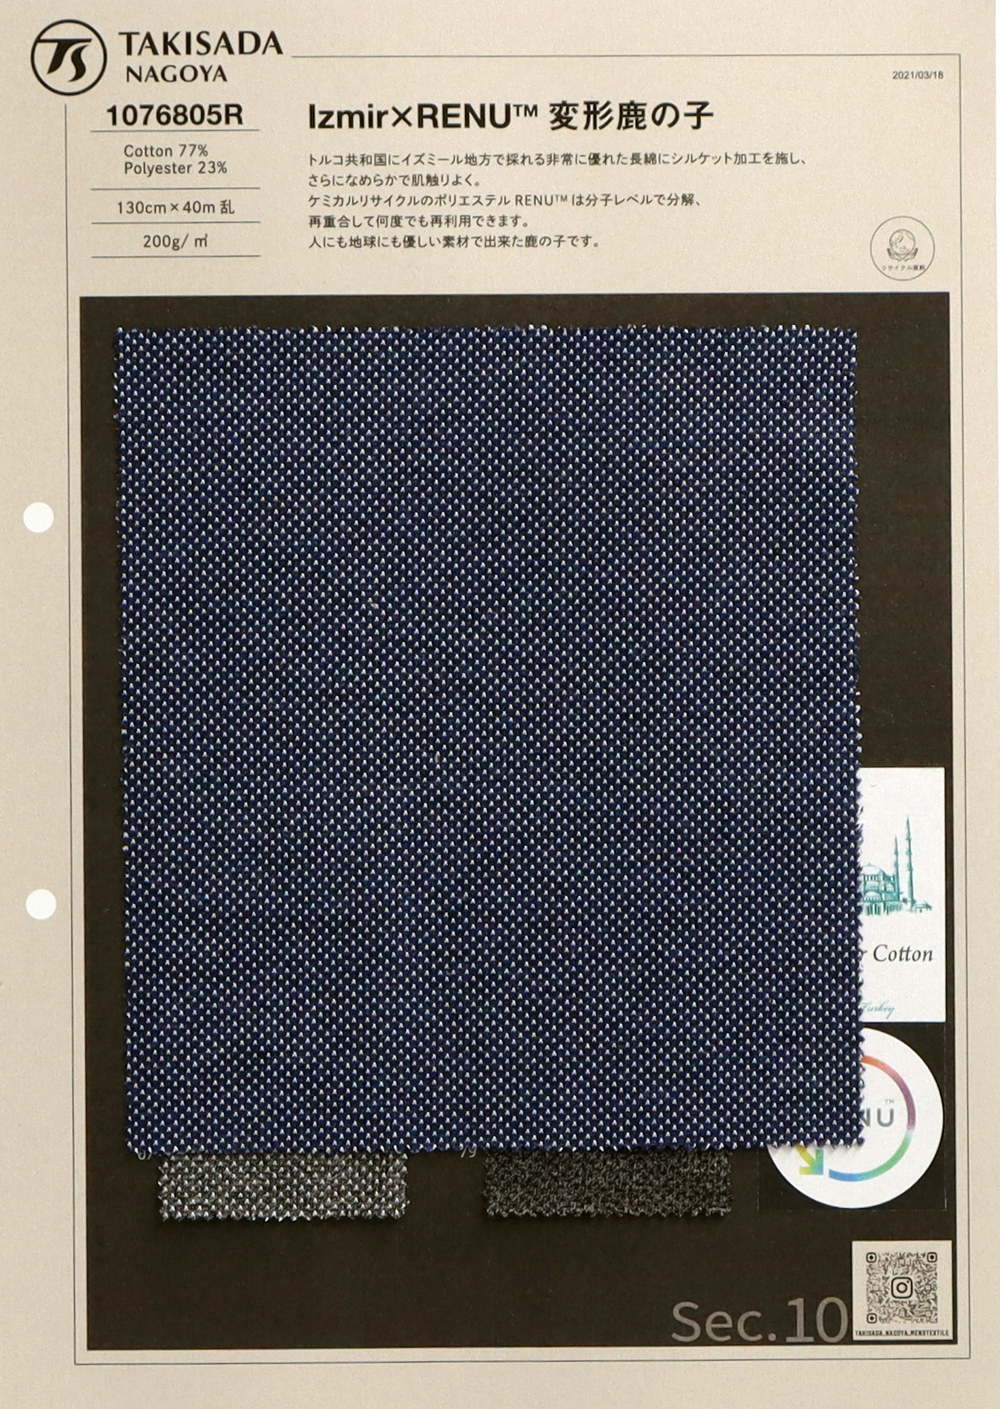 1076805R Moosstich × RENU ™ Deformiertes Kanoko[Textilgewebe] Takisada Nagoya